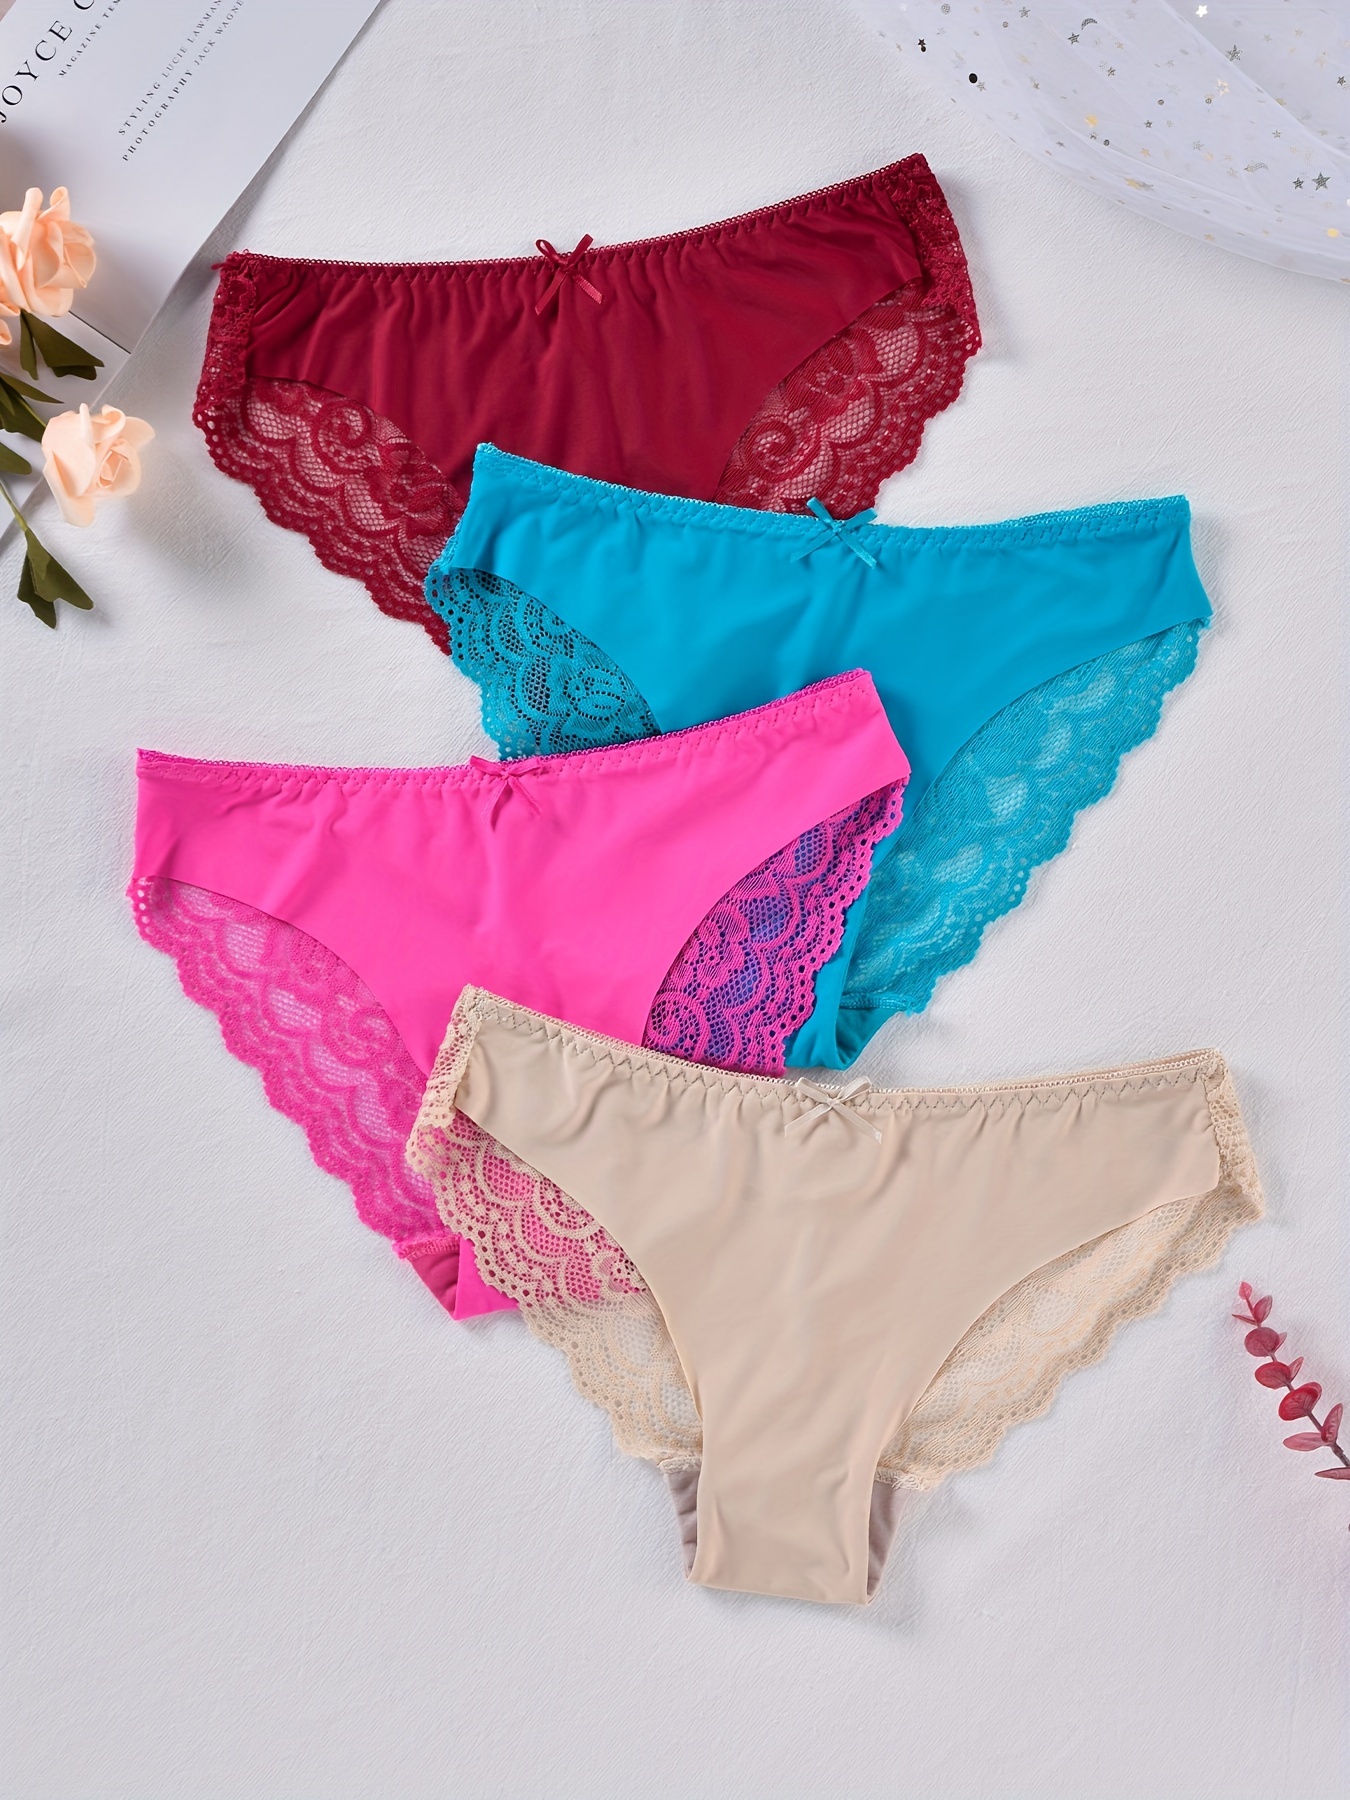 4pcs Lace Stitching Bow Tie Briefs, Breathable Scallop Trim Panties,  Women's Lingerie & Underwear